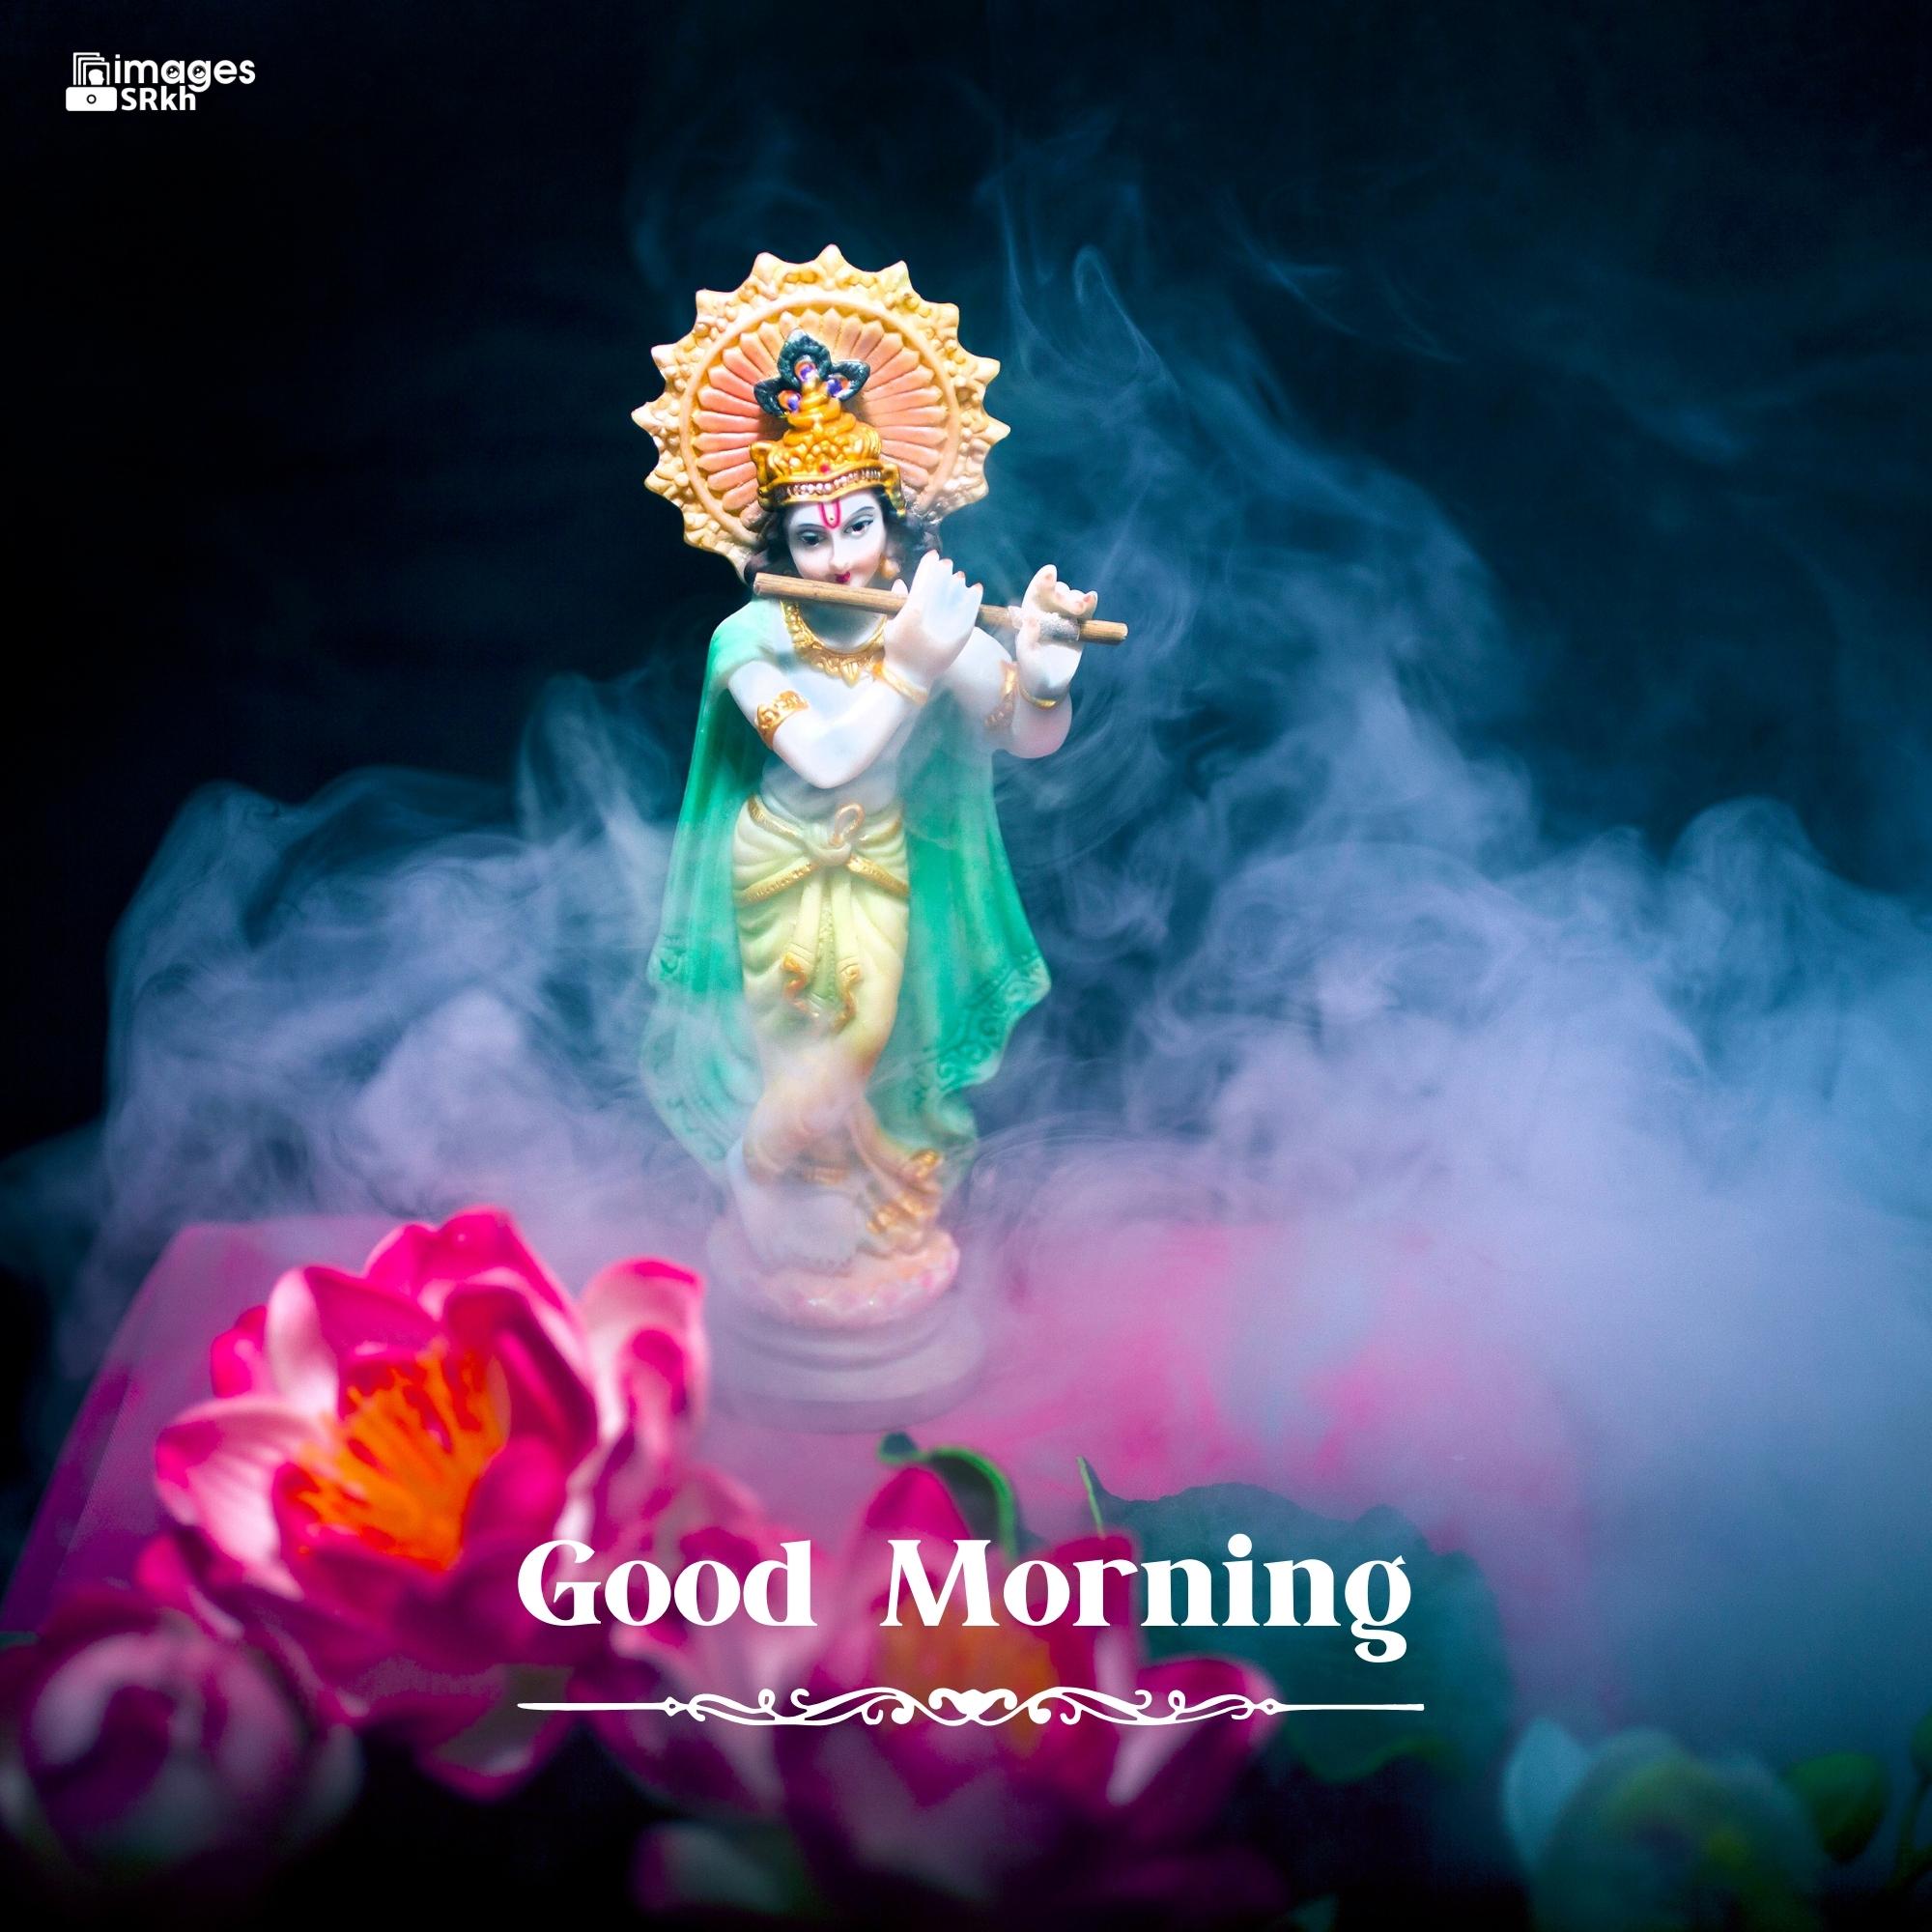 🔥 Shree Krishna Good Morning Images Download free - Images SRkh